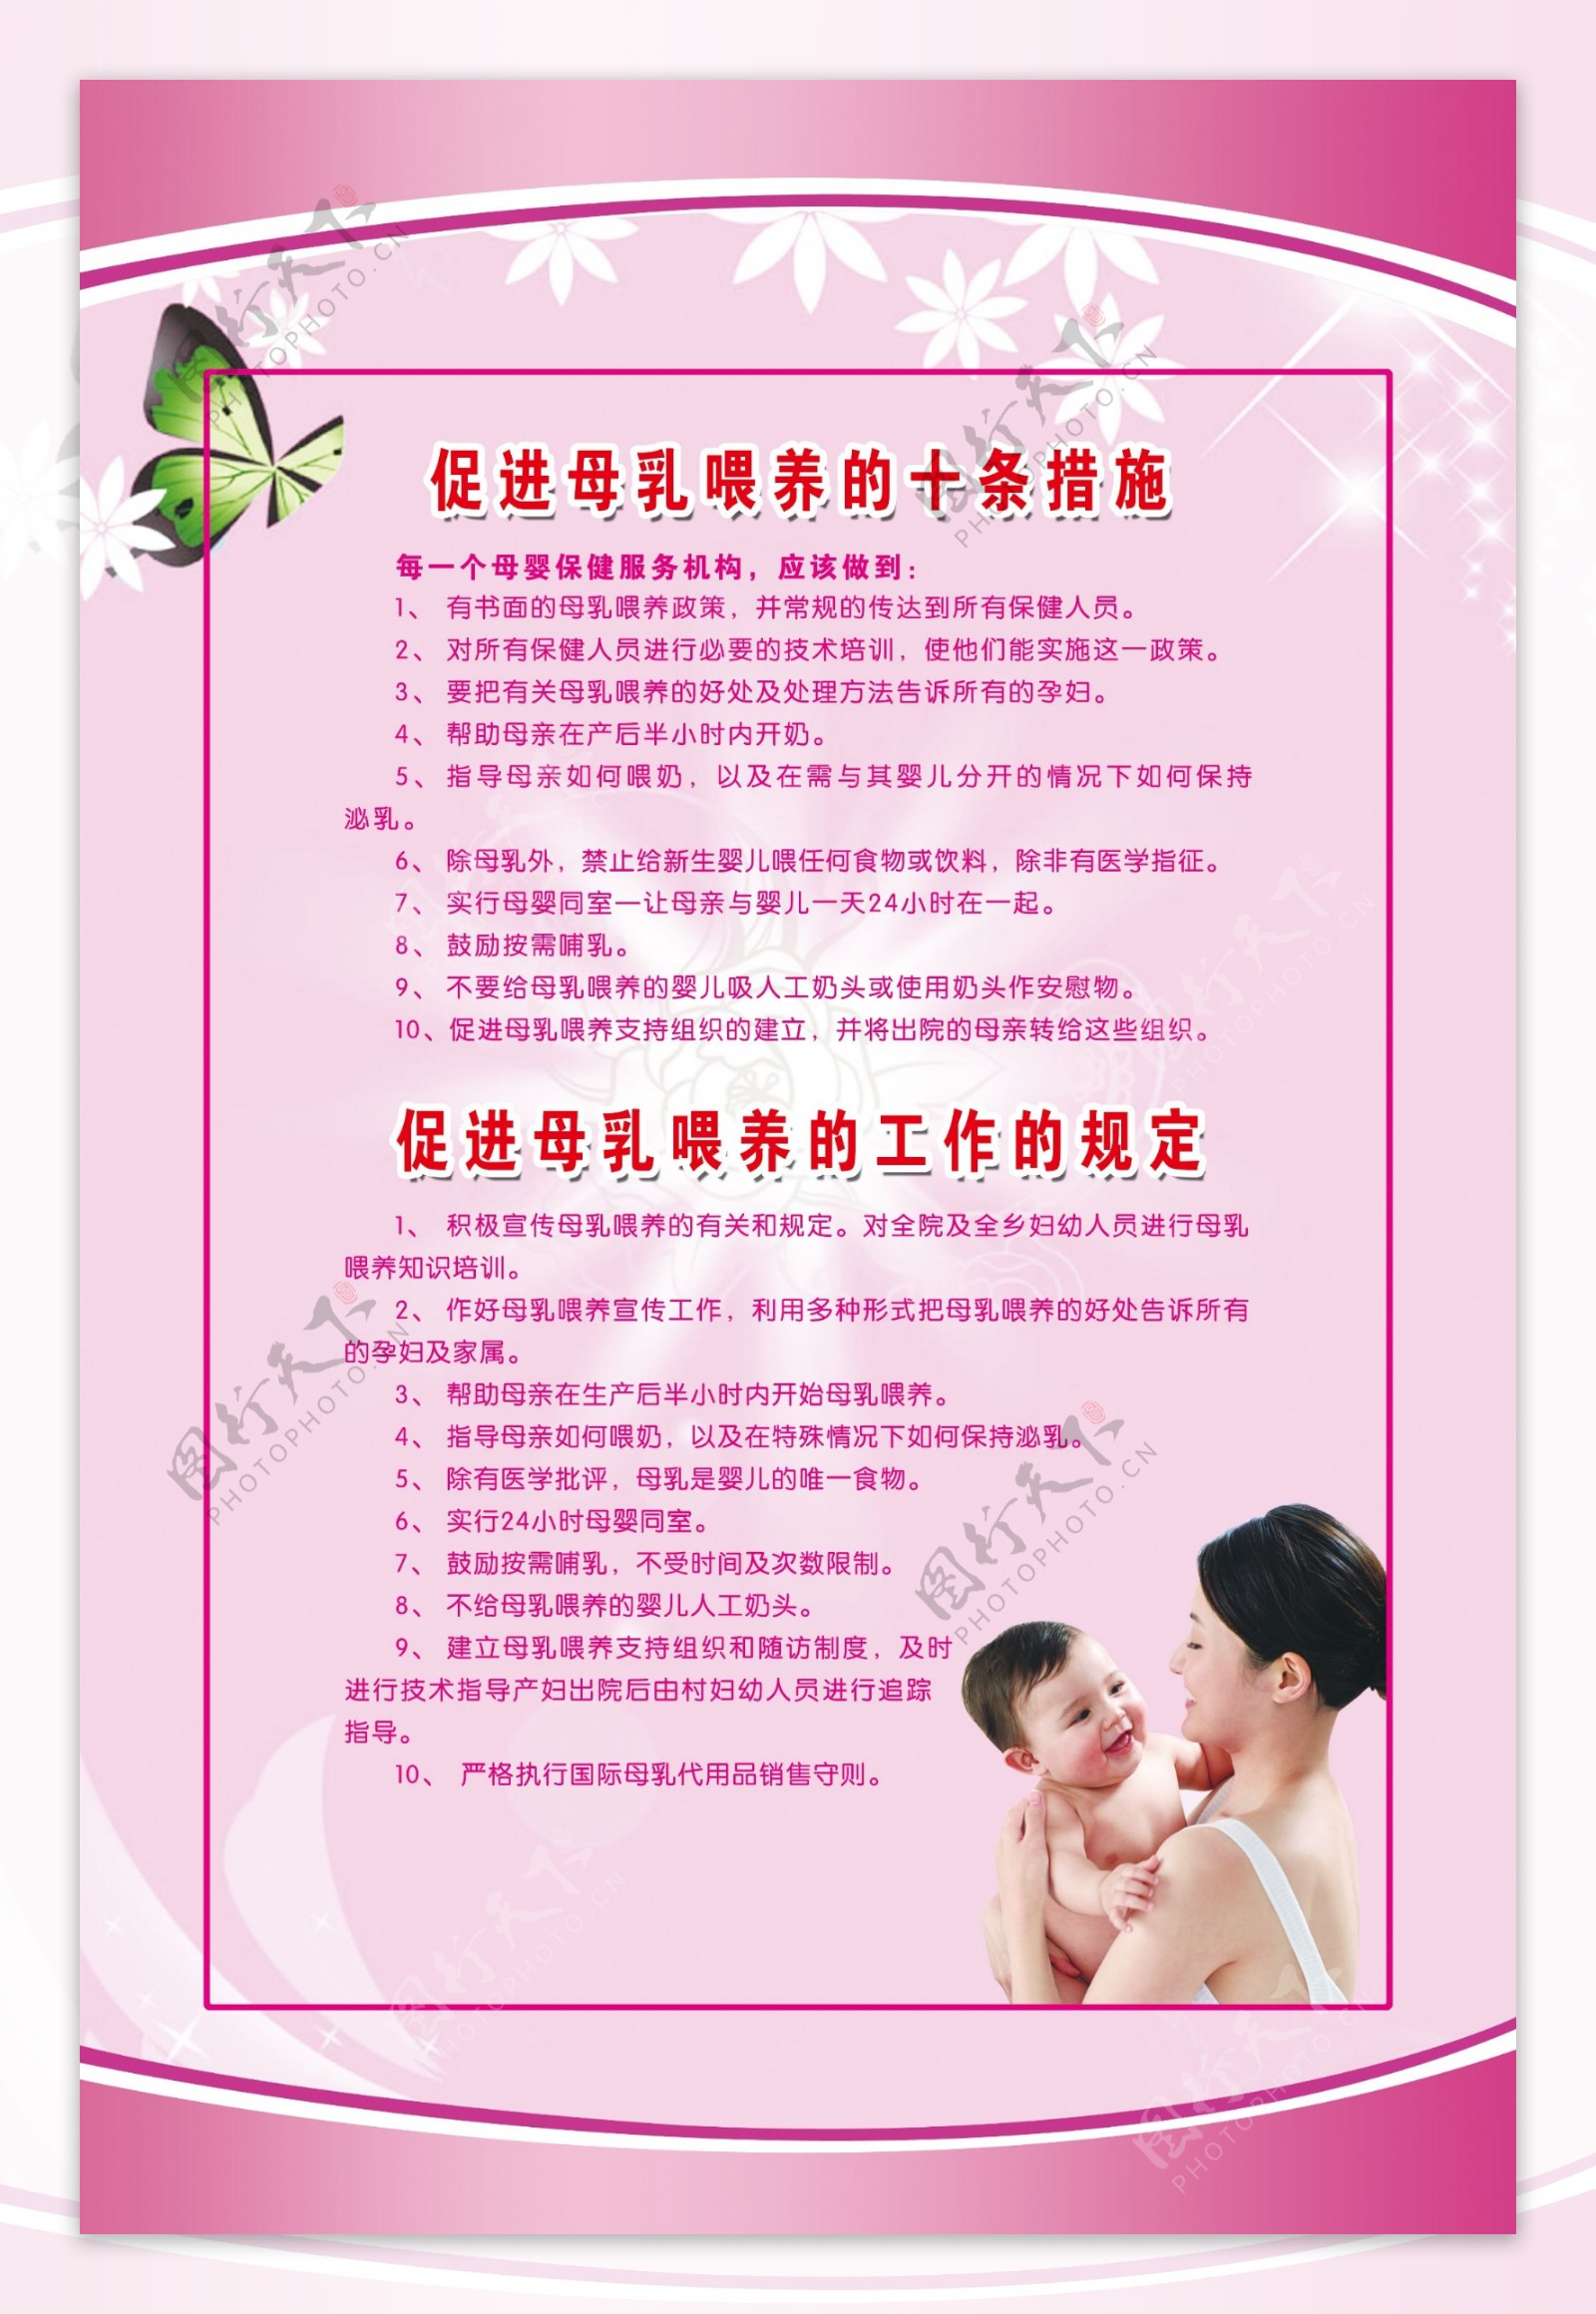 促进母乳喂养的十条措施图片